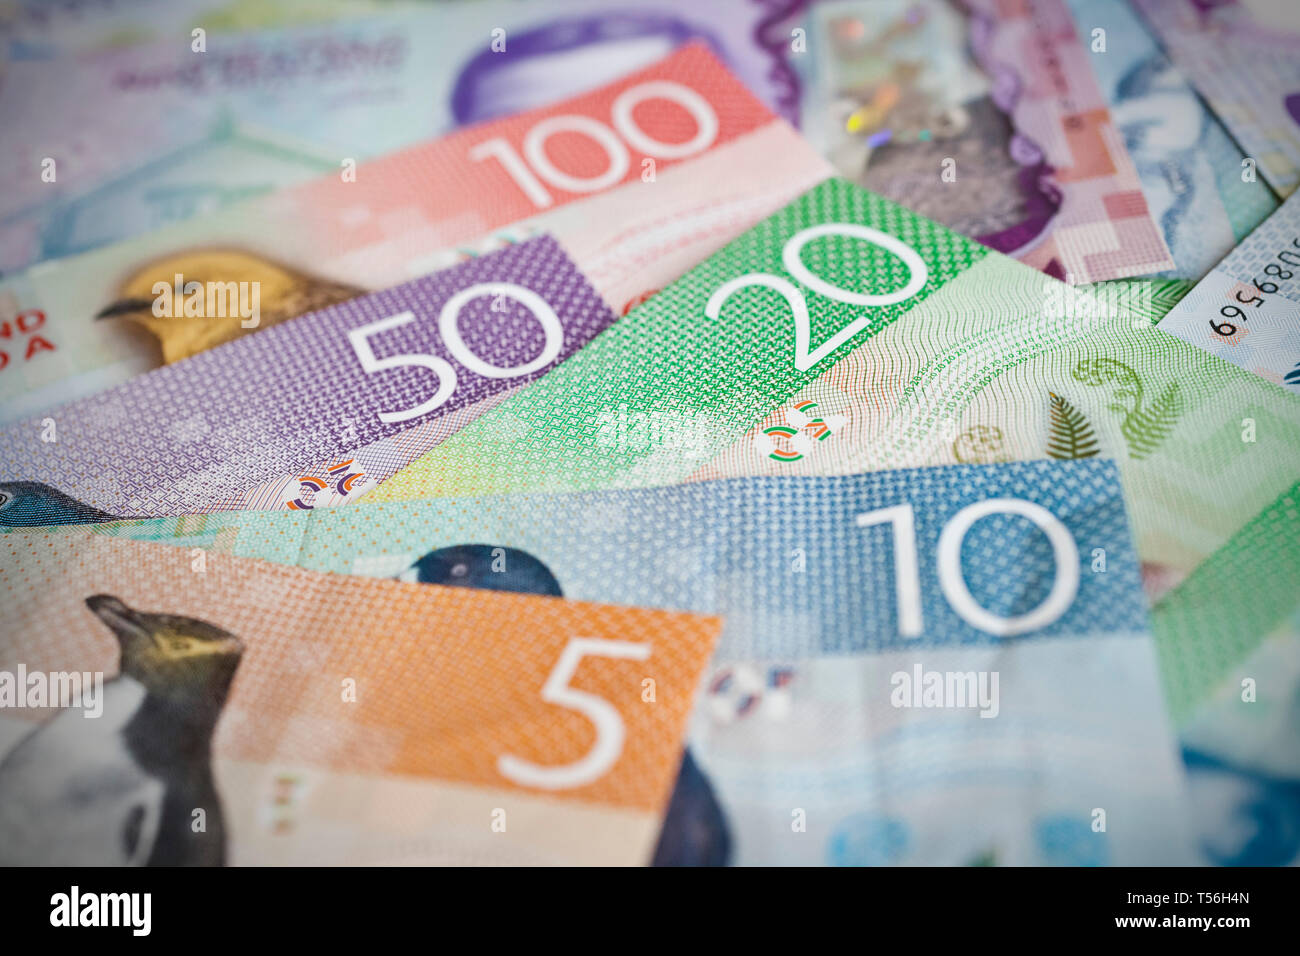 Stapel von Neuseeland Währung flach auf Tabelle Stockfoto